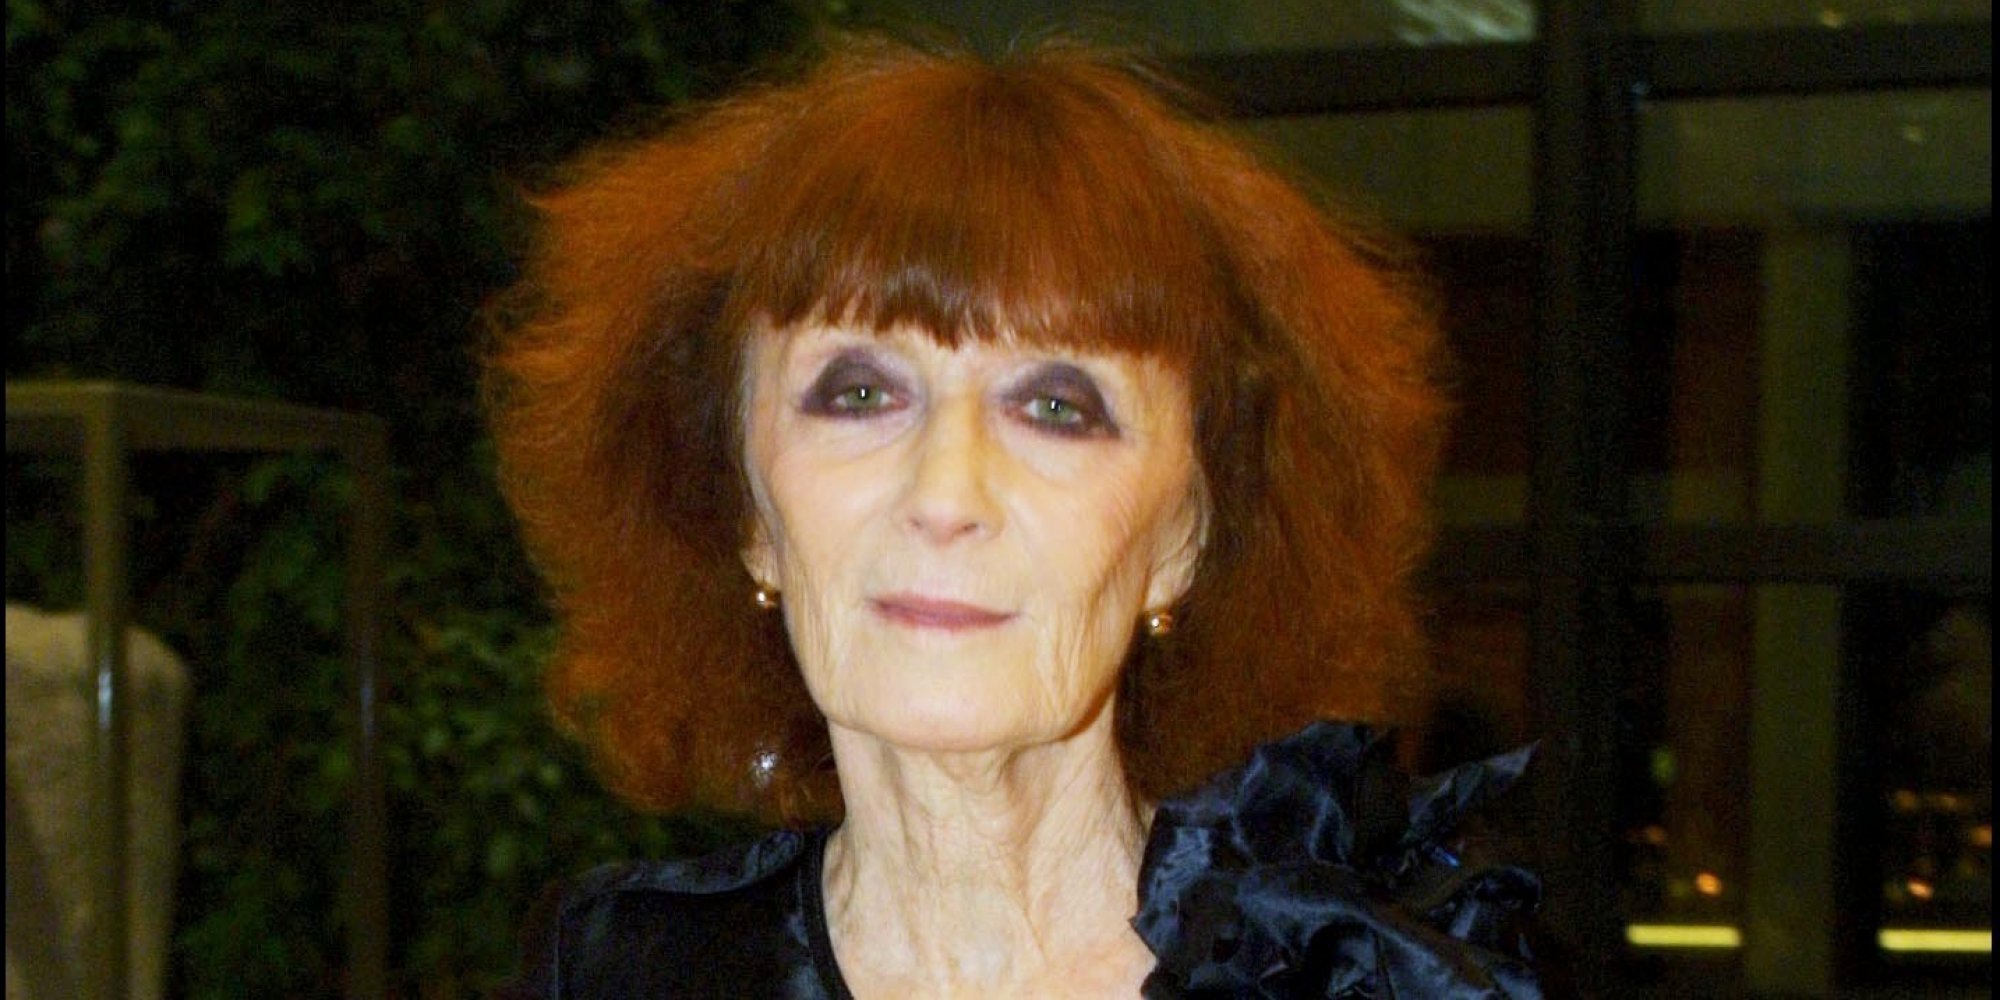 'Queen Of Knitwear' Sonia Rykiel Dead At 86: Family